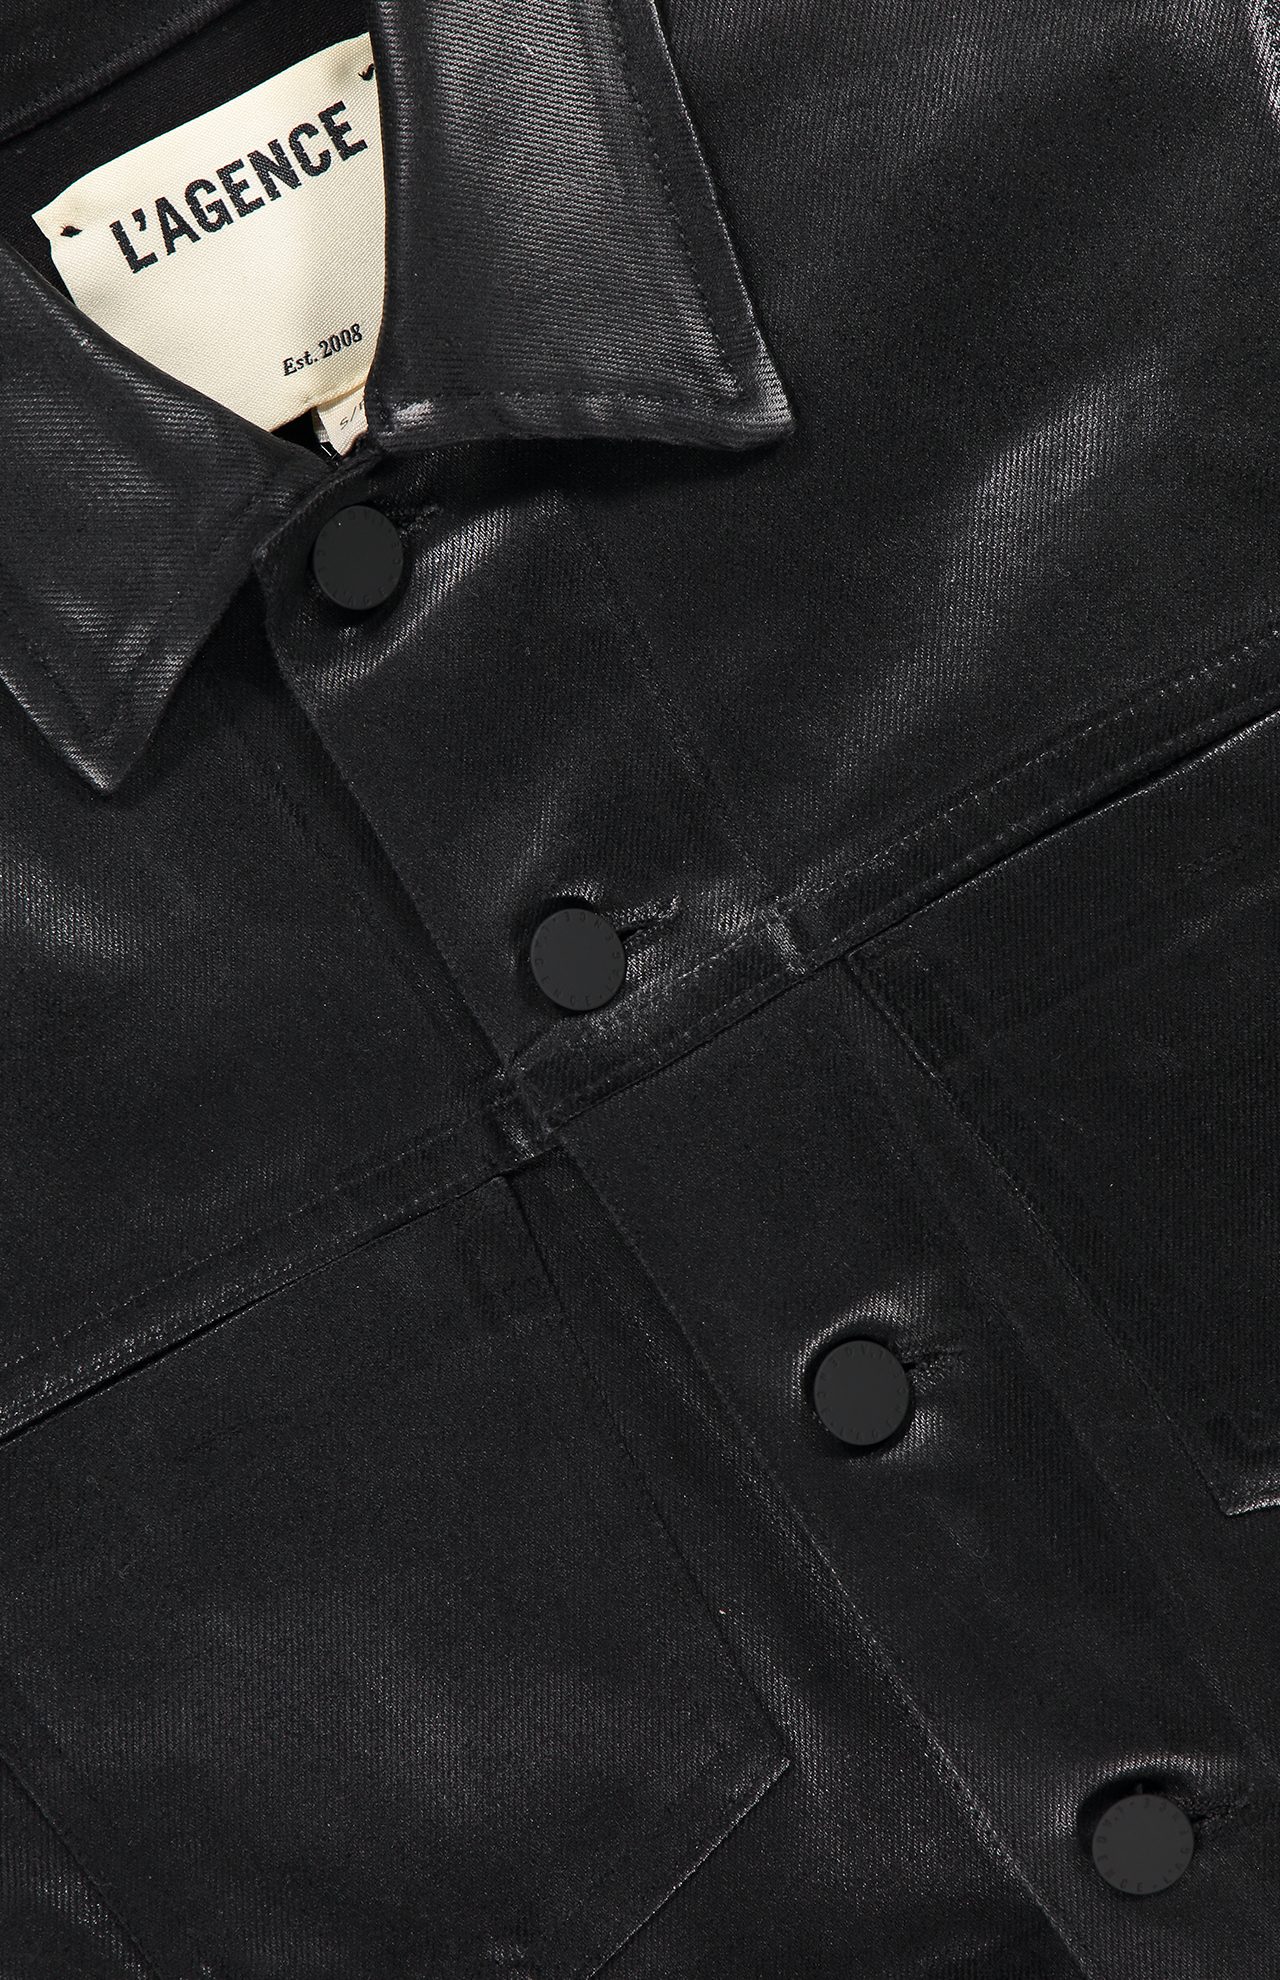 Lagence Janelle Slim Jacket Top Detail Image (6990794424435)